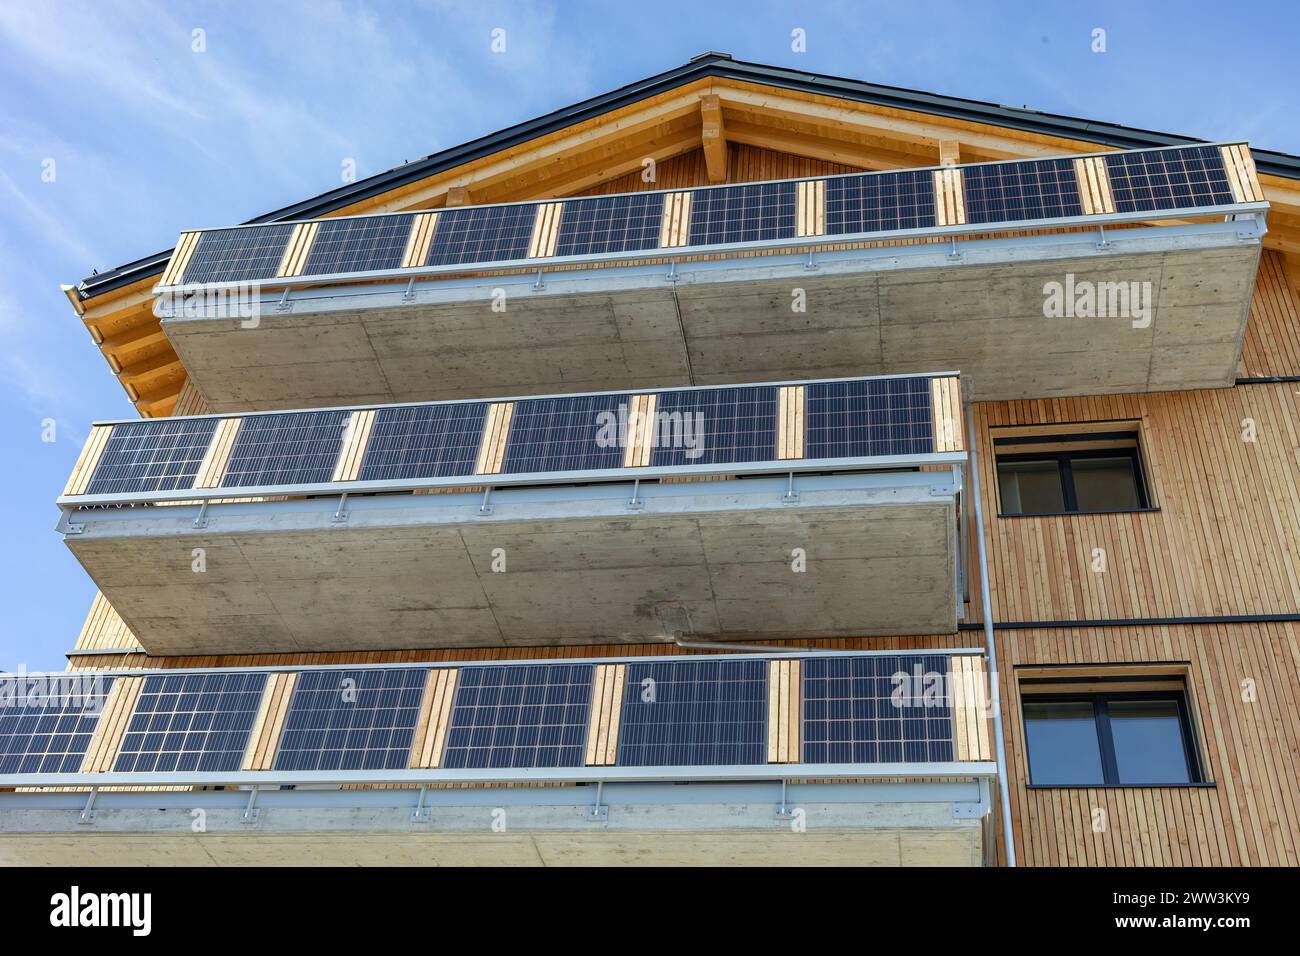 Wohngebäude mit großen Betonbalkonen, die mit Solarzellen bedeckt sind Stockfoto